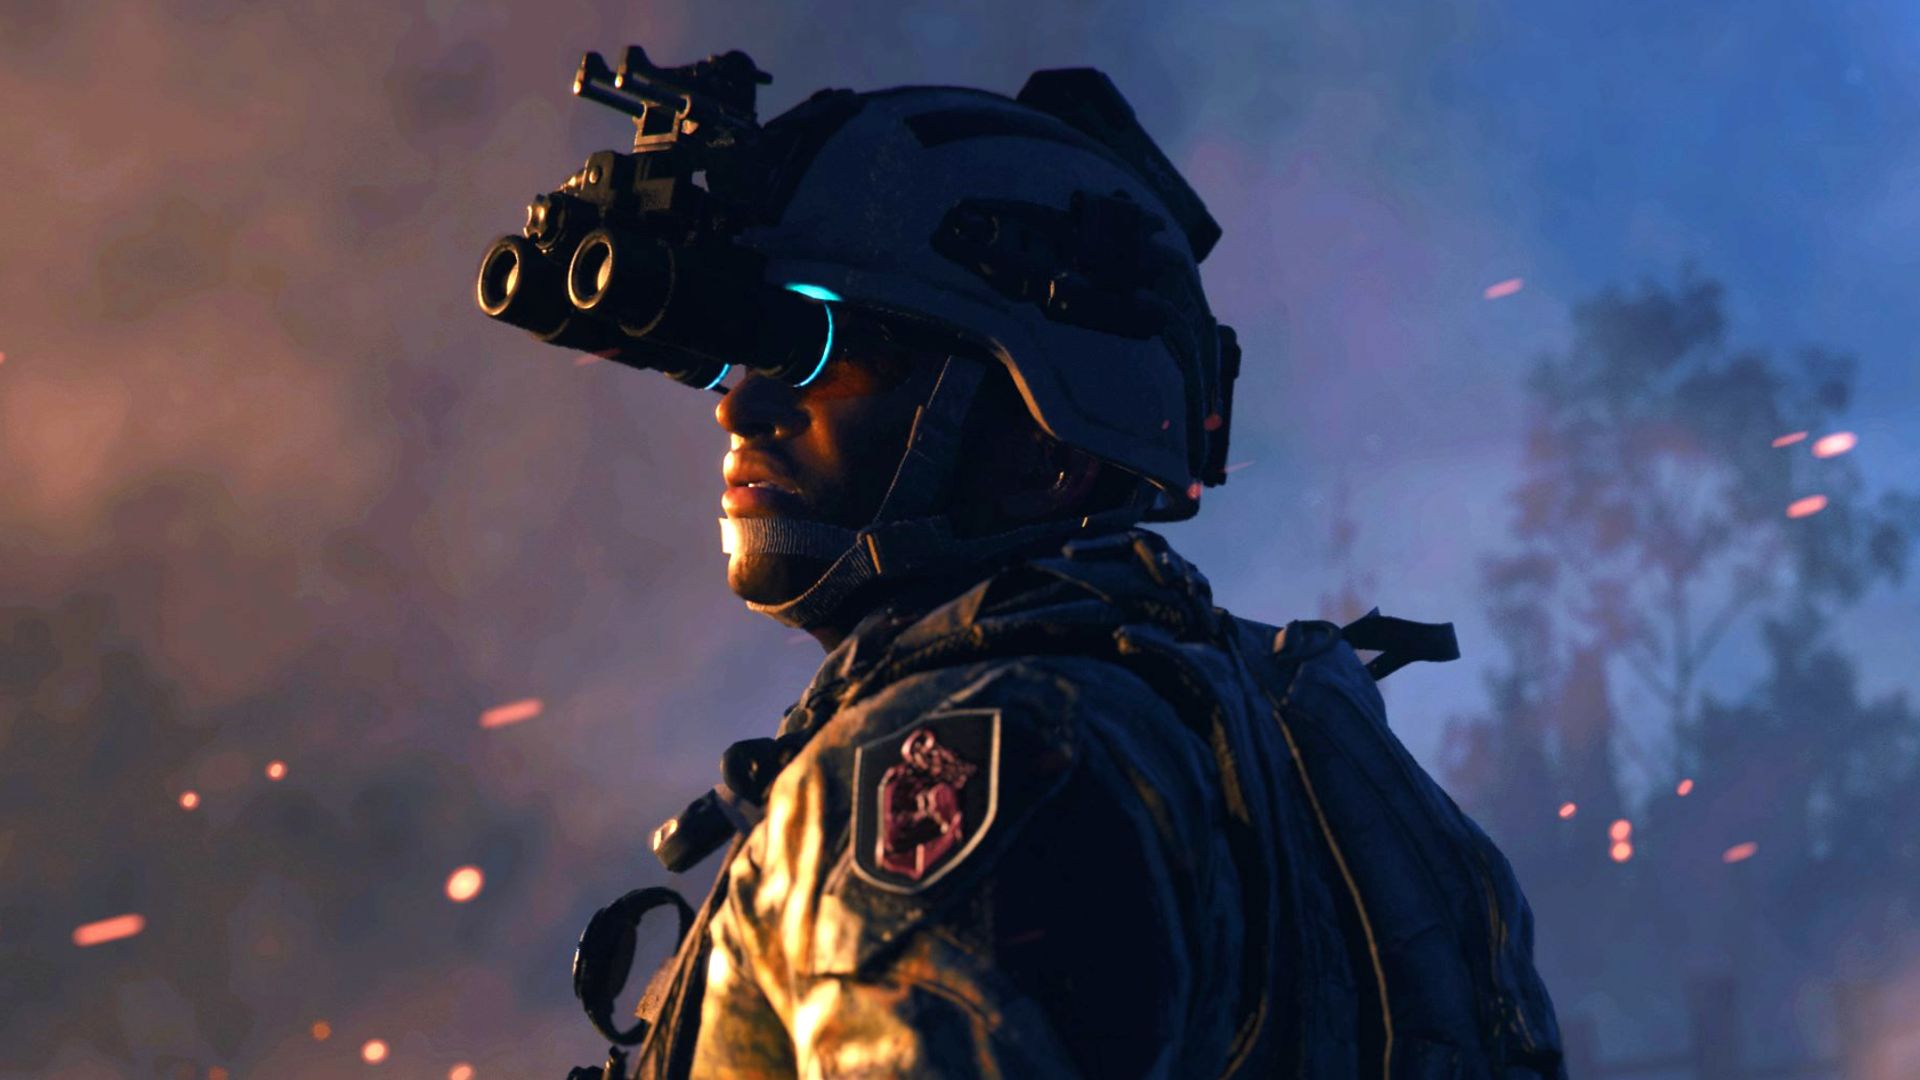 How to play Call of Duty: Modern Warfare 2 split screen co-op